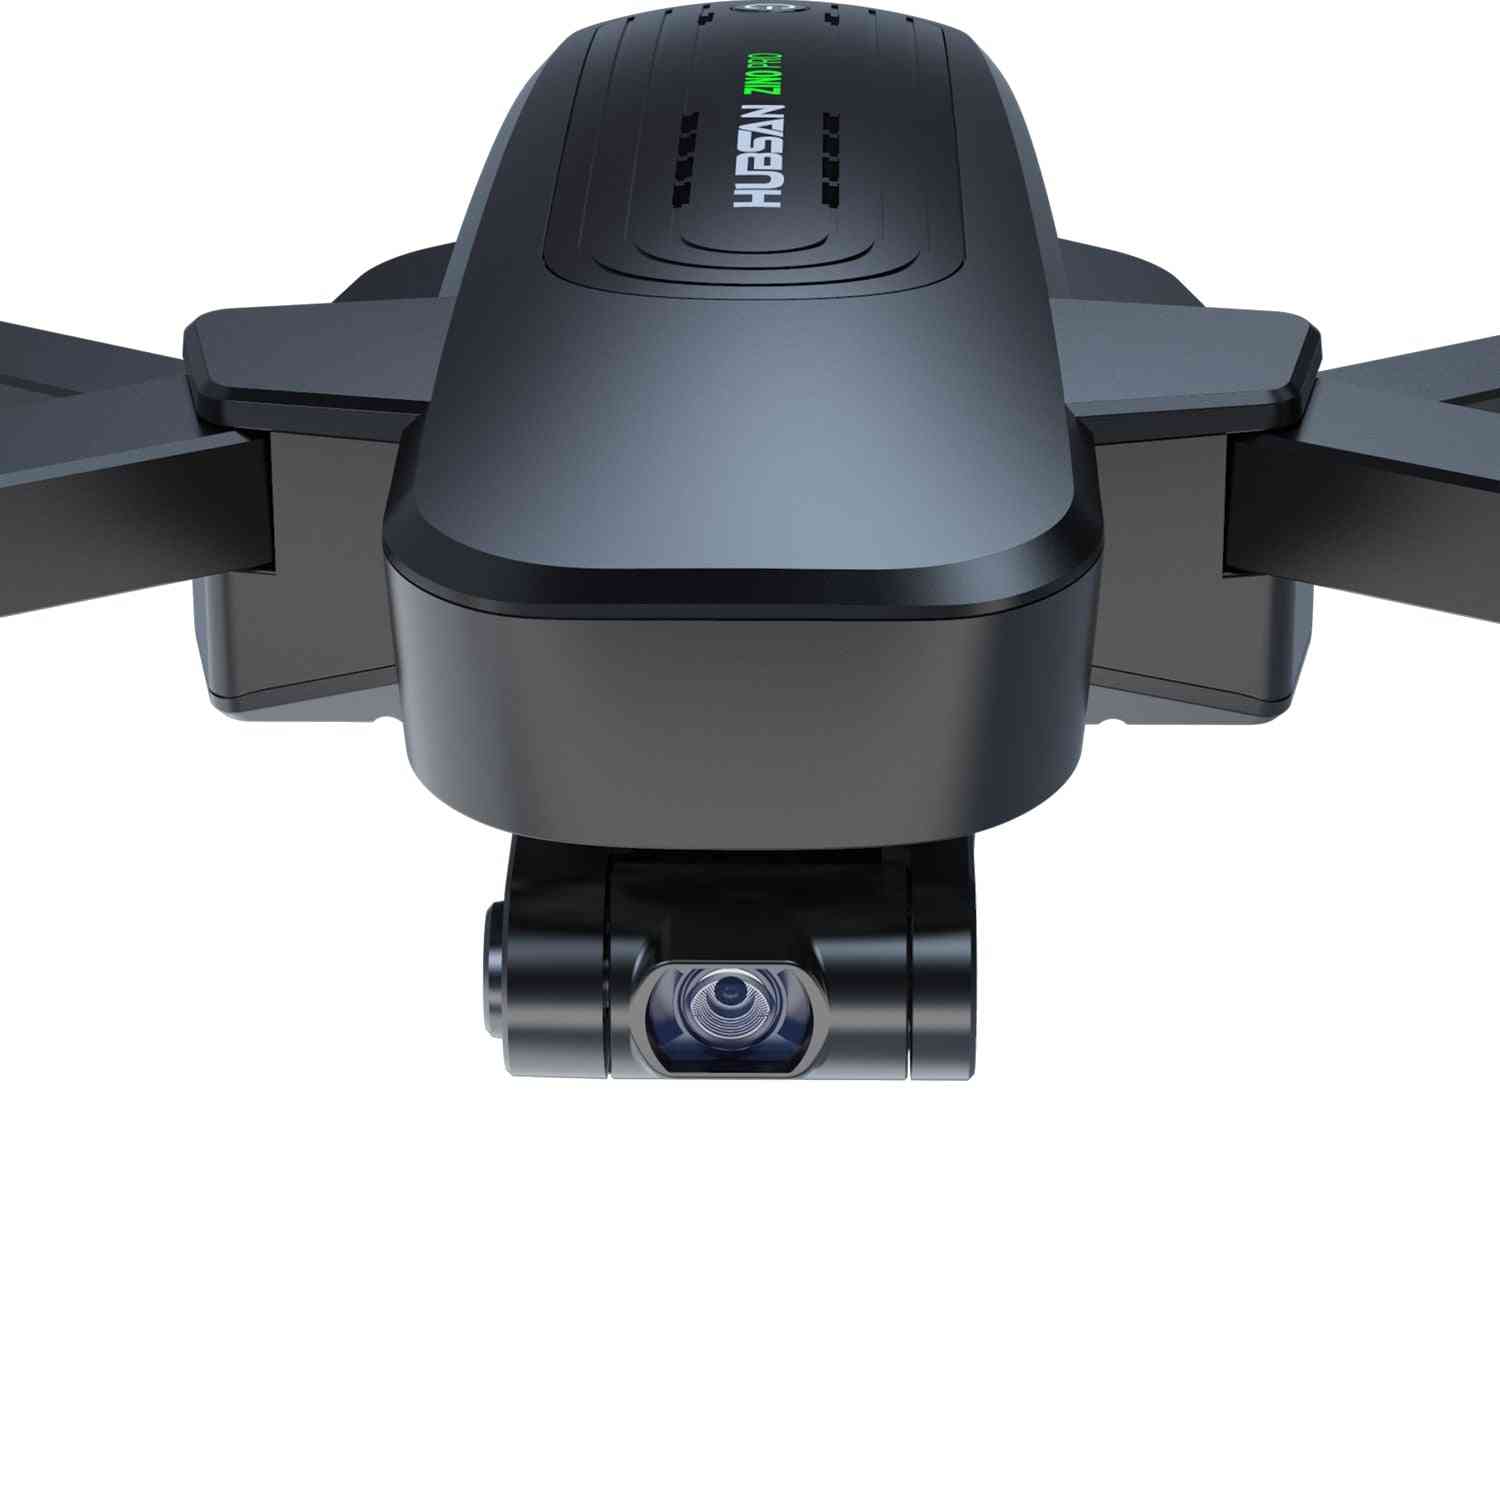 H117s zino - drone gps com câmera 4k, 5,8g, 1km, quadricóptero de drone com controle remoto de gimbal de 3 eixos, dron brushless rtf - zino h117s